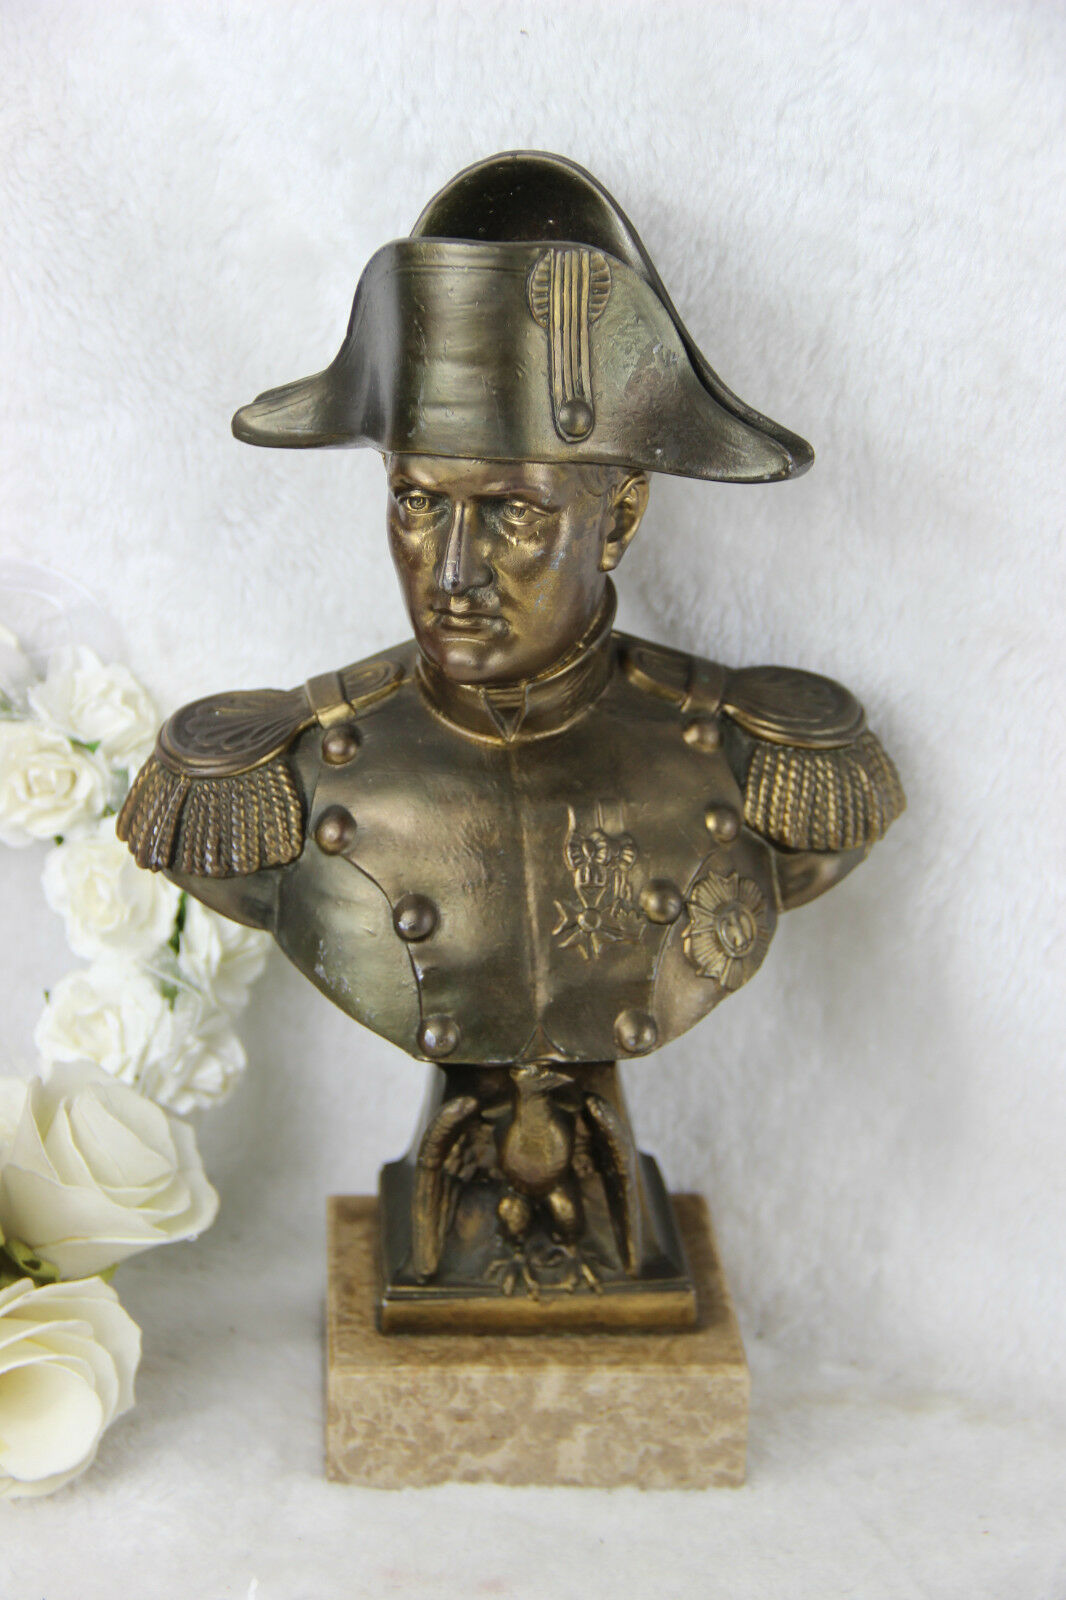 Bust of Napoleon I 